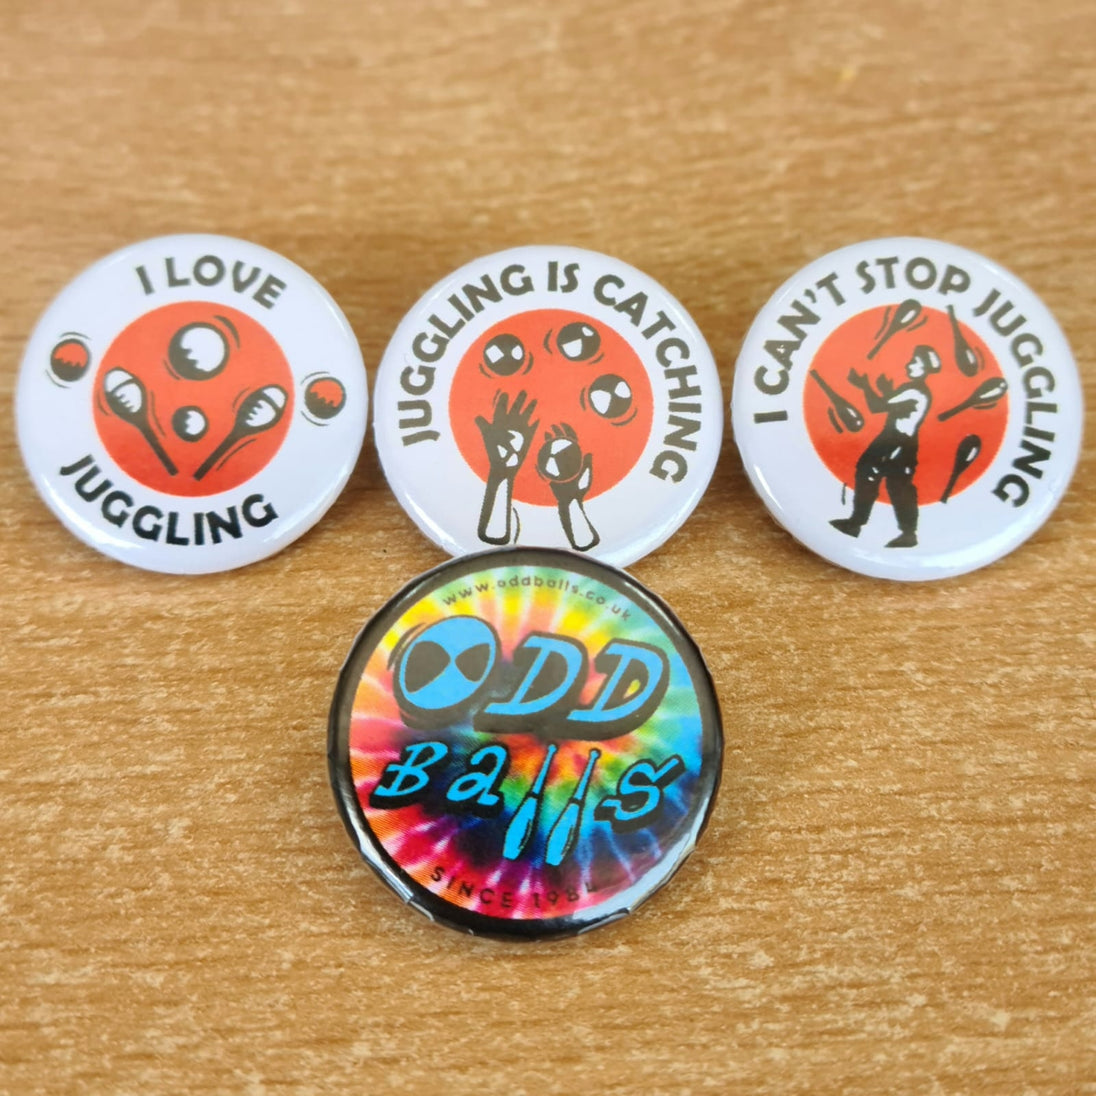 Oddballs Badges - 4 types